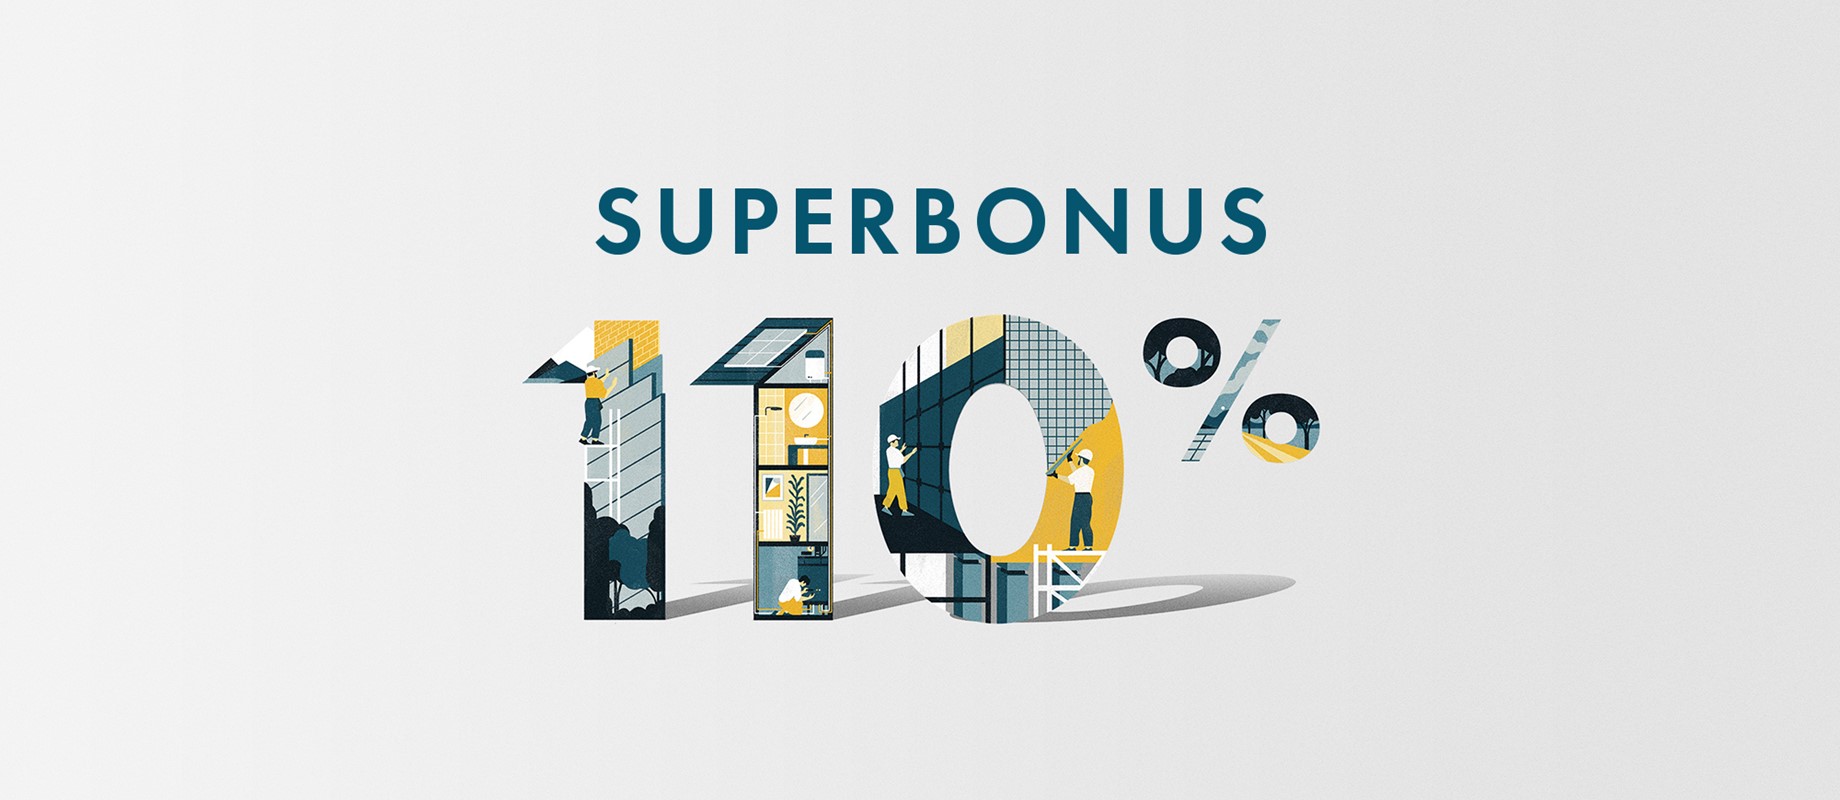 La detrazione fiscale fino al 110% della spesa: approfitta del Superbonus 110%! 